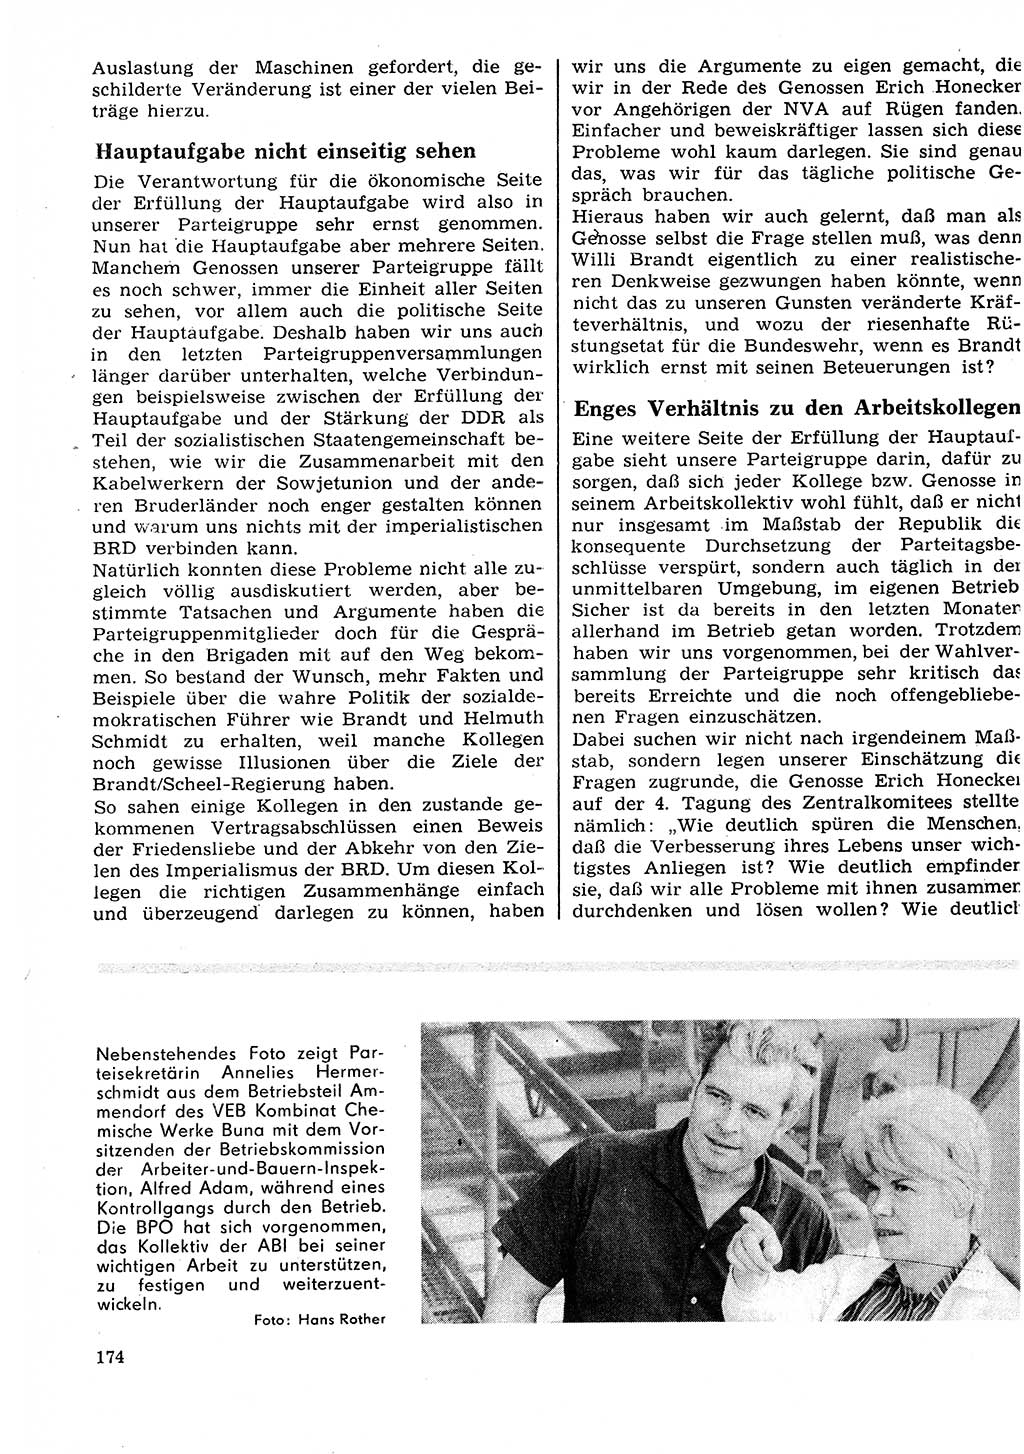 Neuer Weg (NW), Organ des Zentralkomitees (ZK) der SED (Sozialistische Einheitspartei Deutschlands) für Fragen des Parteilebens, 27. Jahrgang [Deutsche Demokratische Republik (DDR)] 1972, Seite 174 (NW ZK SED DDR 1972, S. 174)